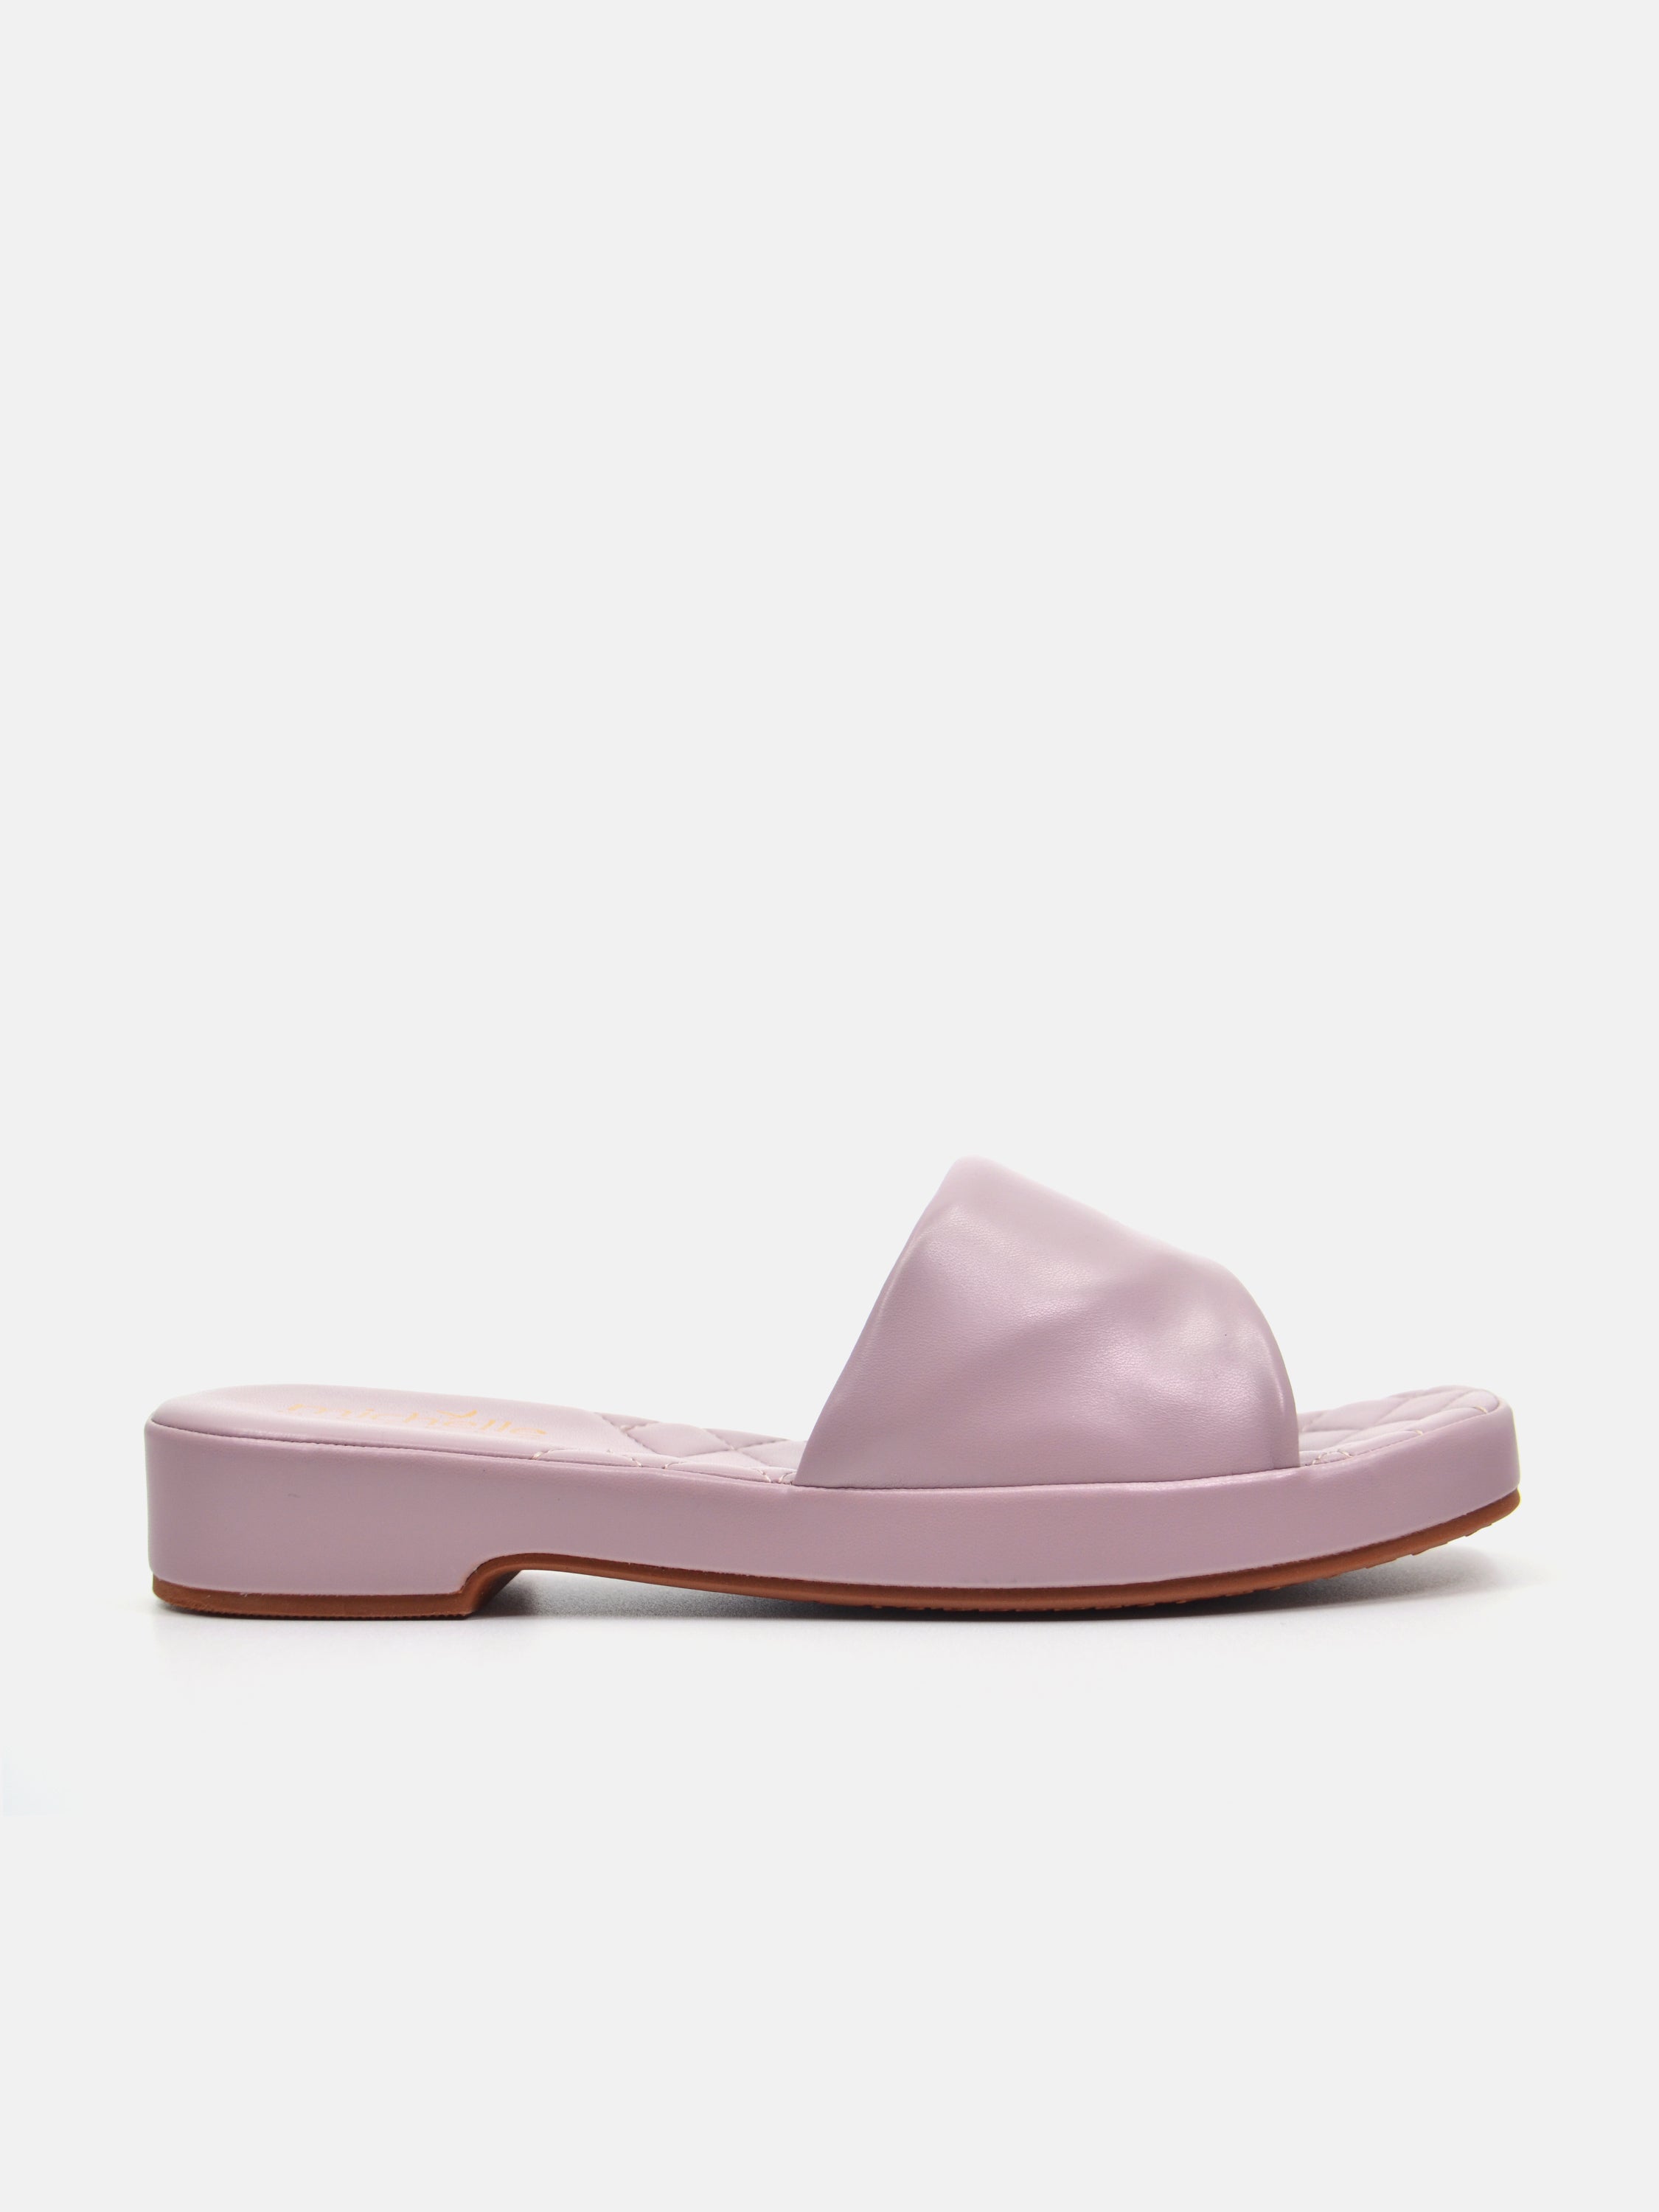 Michelle Morgan 114ZD612 Women's Flat Sandals #color_Purple